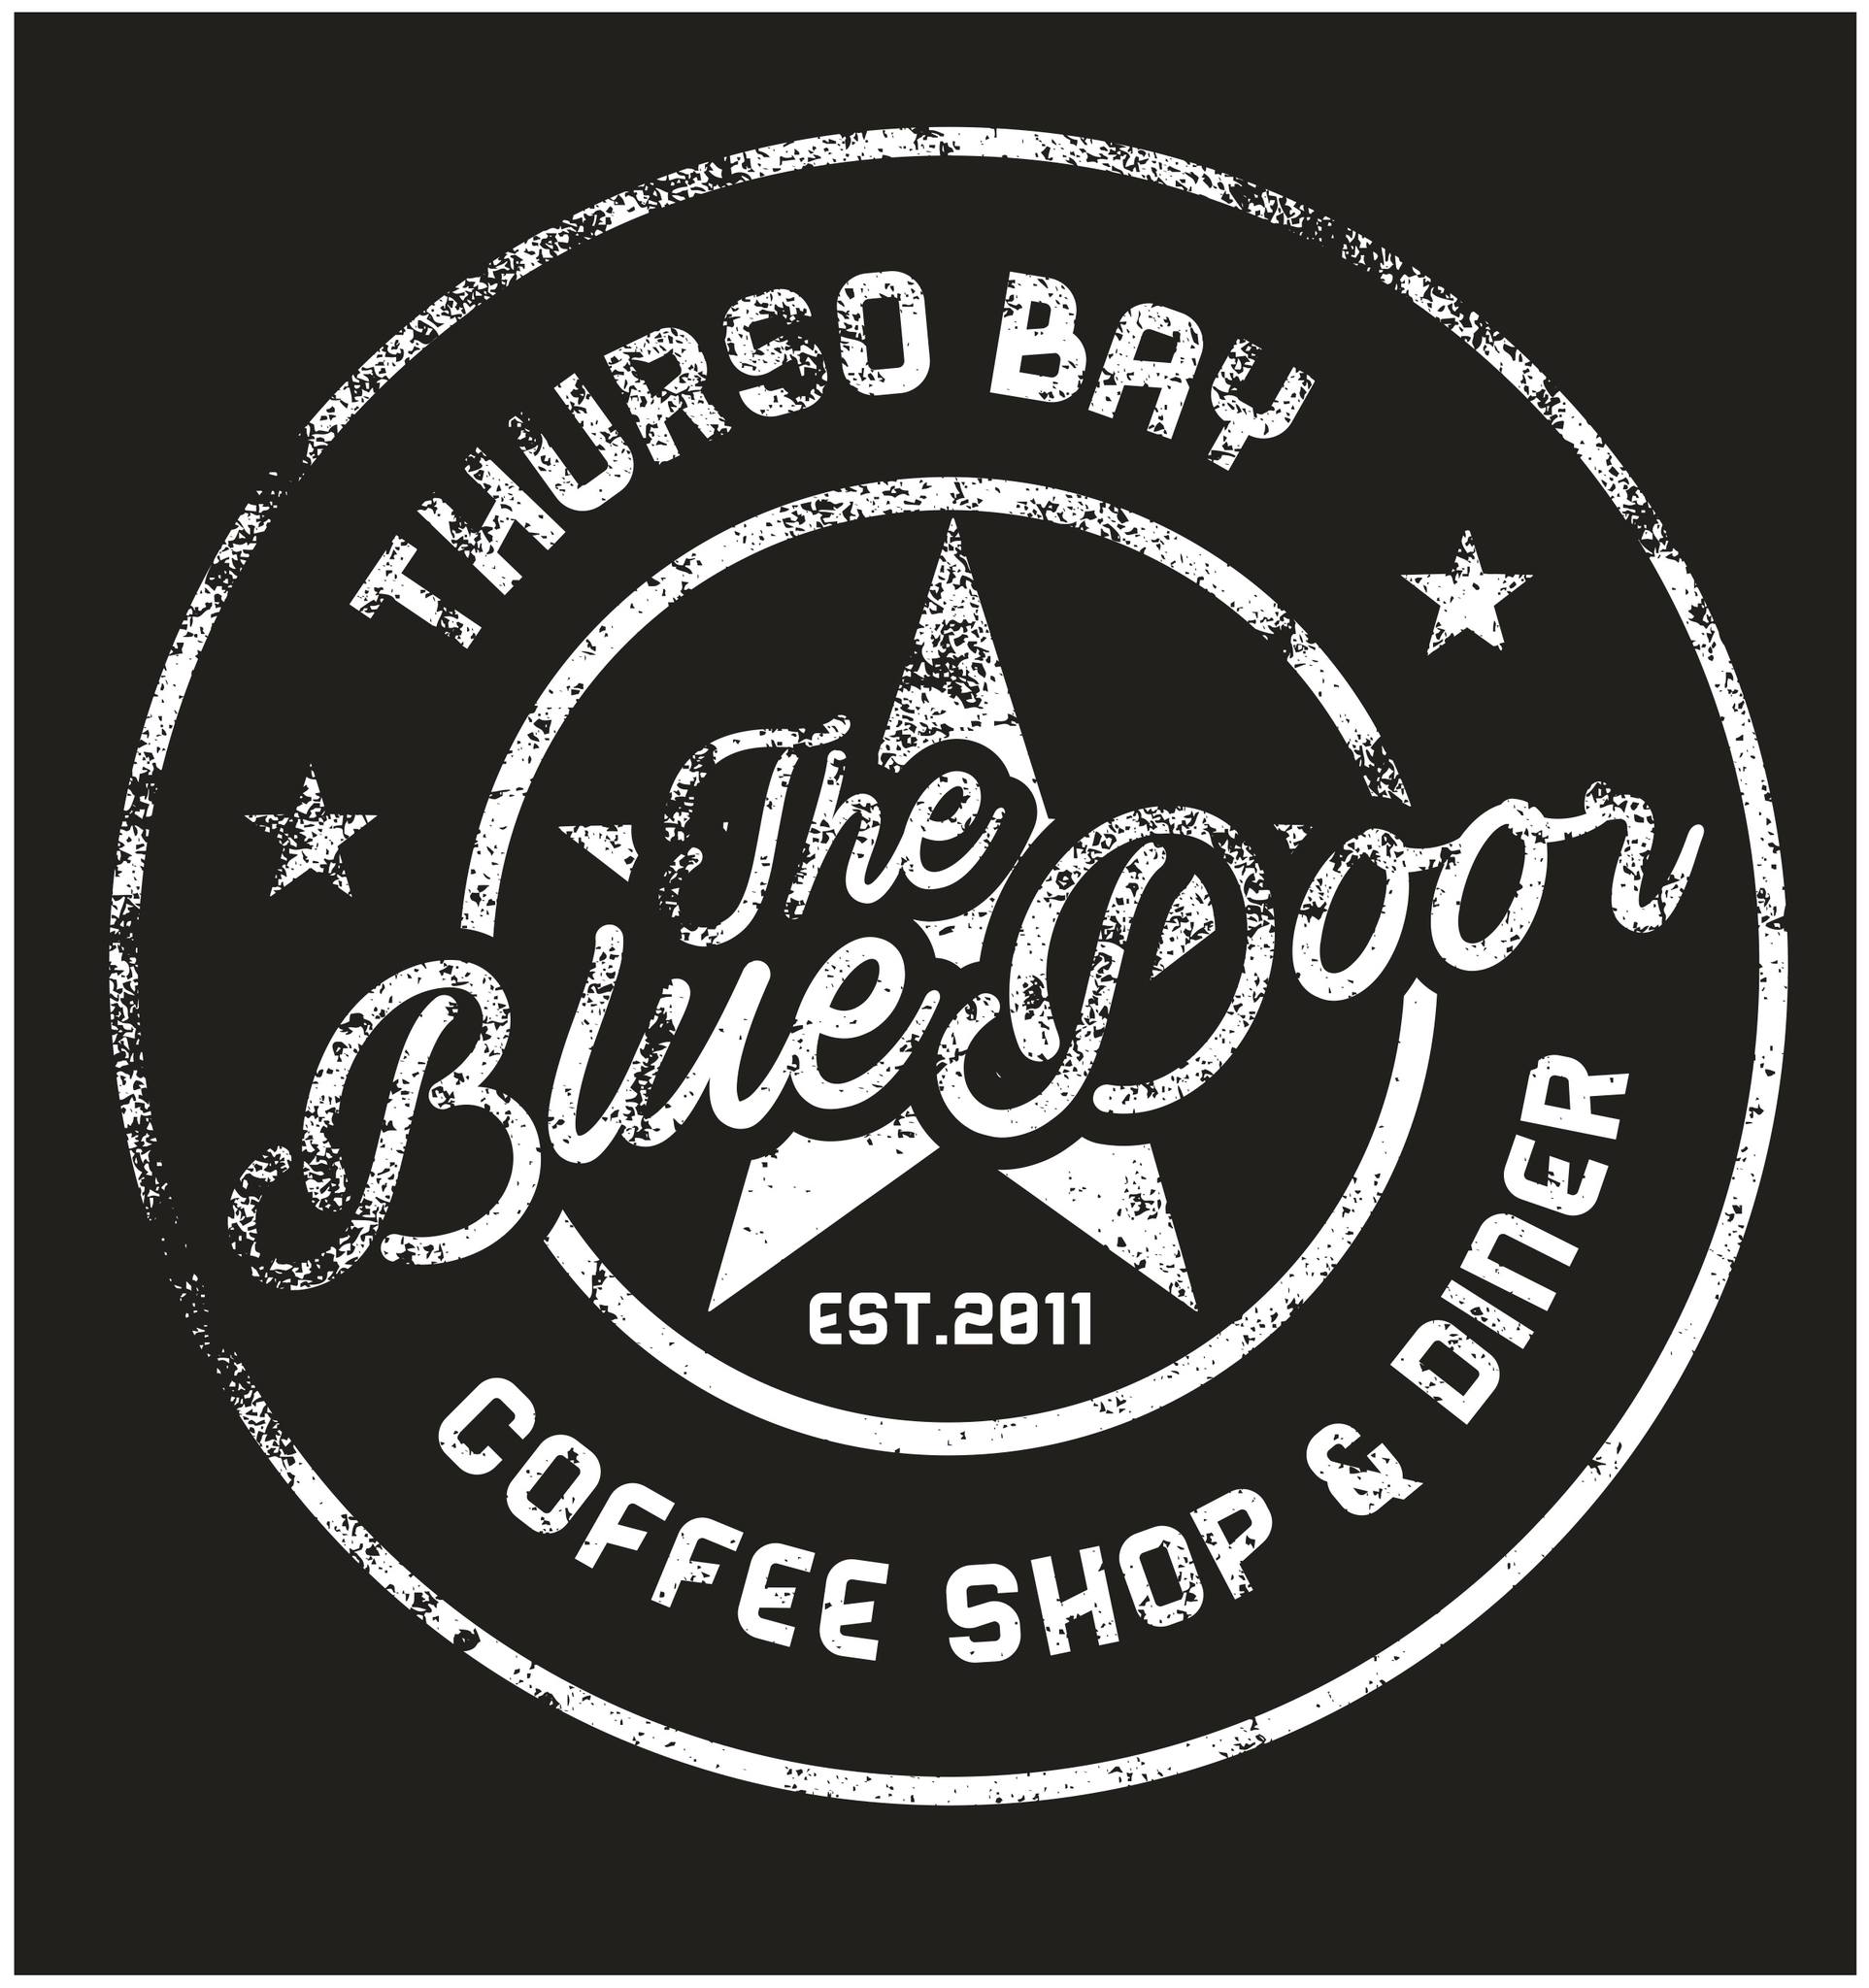 The Blue Door Coffee Shop & Diner